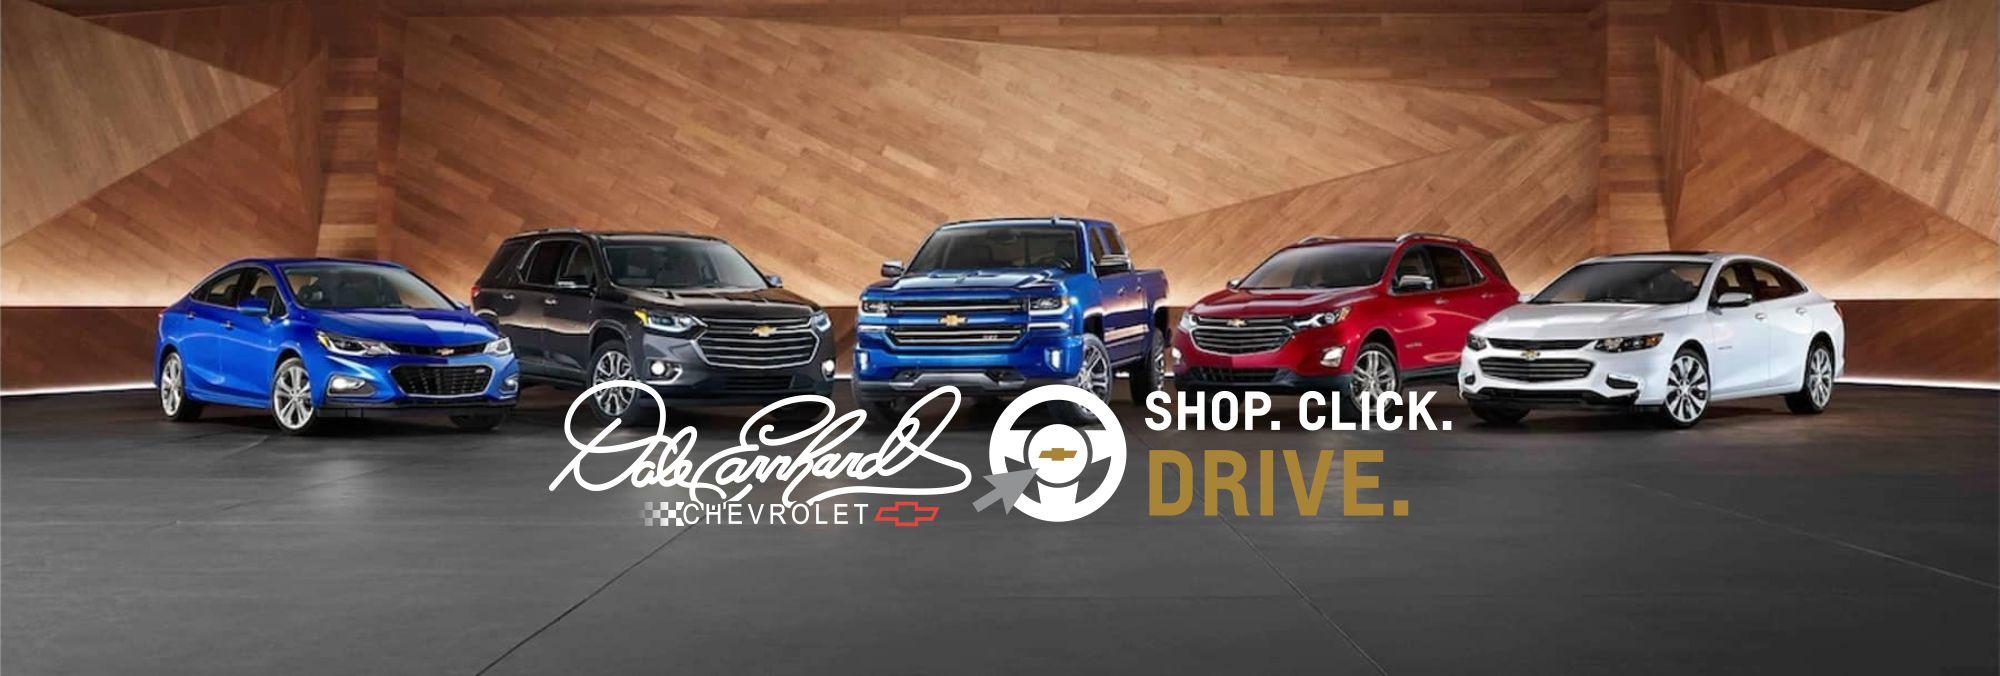 Chevrolet Shop Click Drive